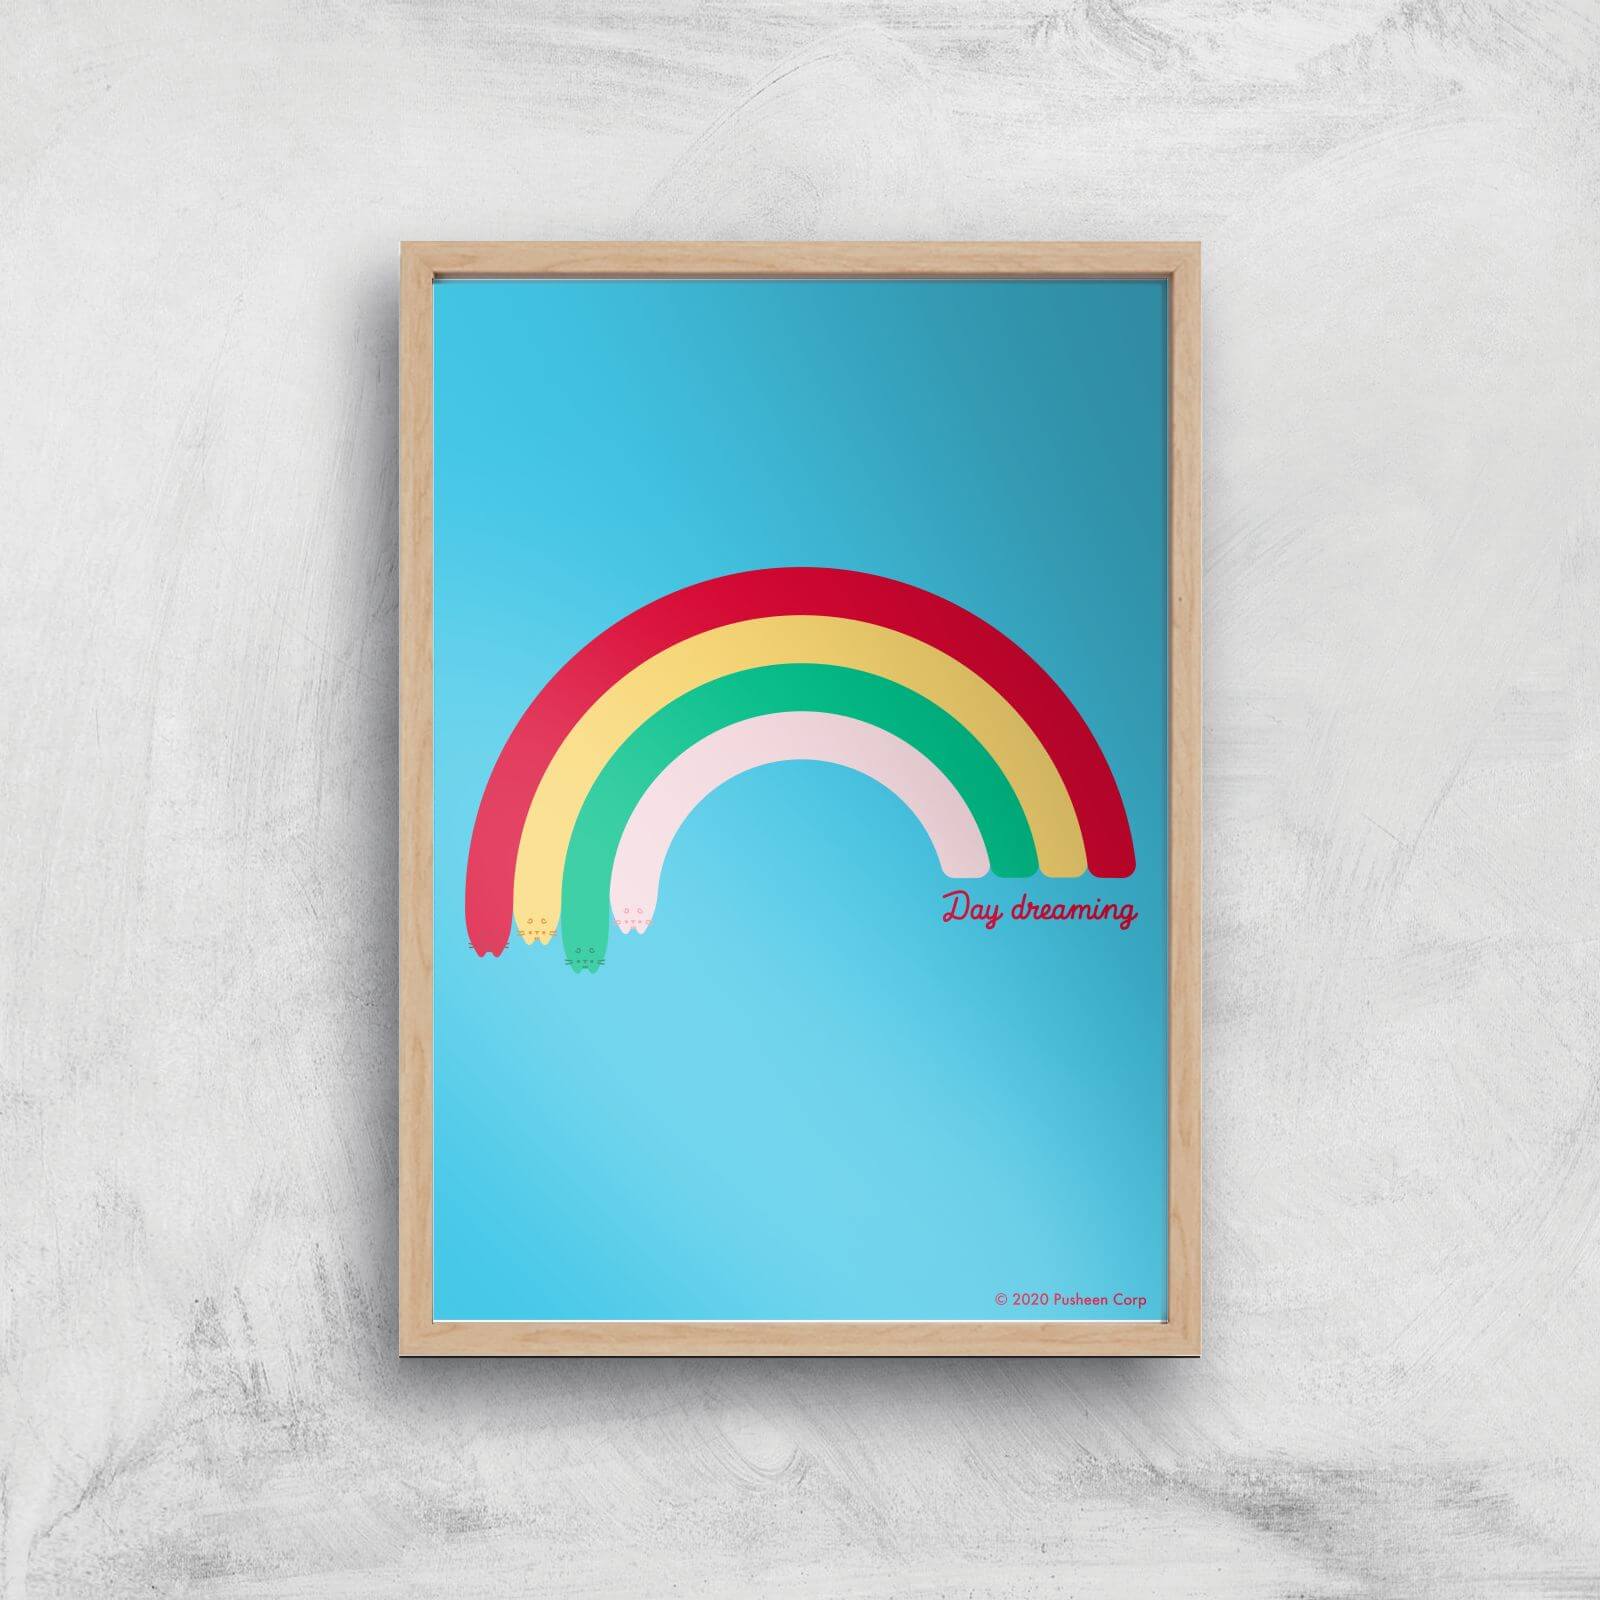 Pusheen Large Rainbow Giclee Art Print - A2 - Wooden Frame